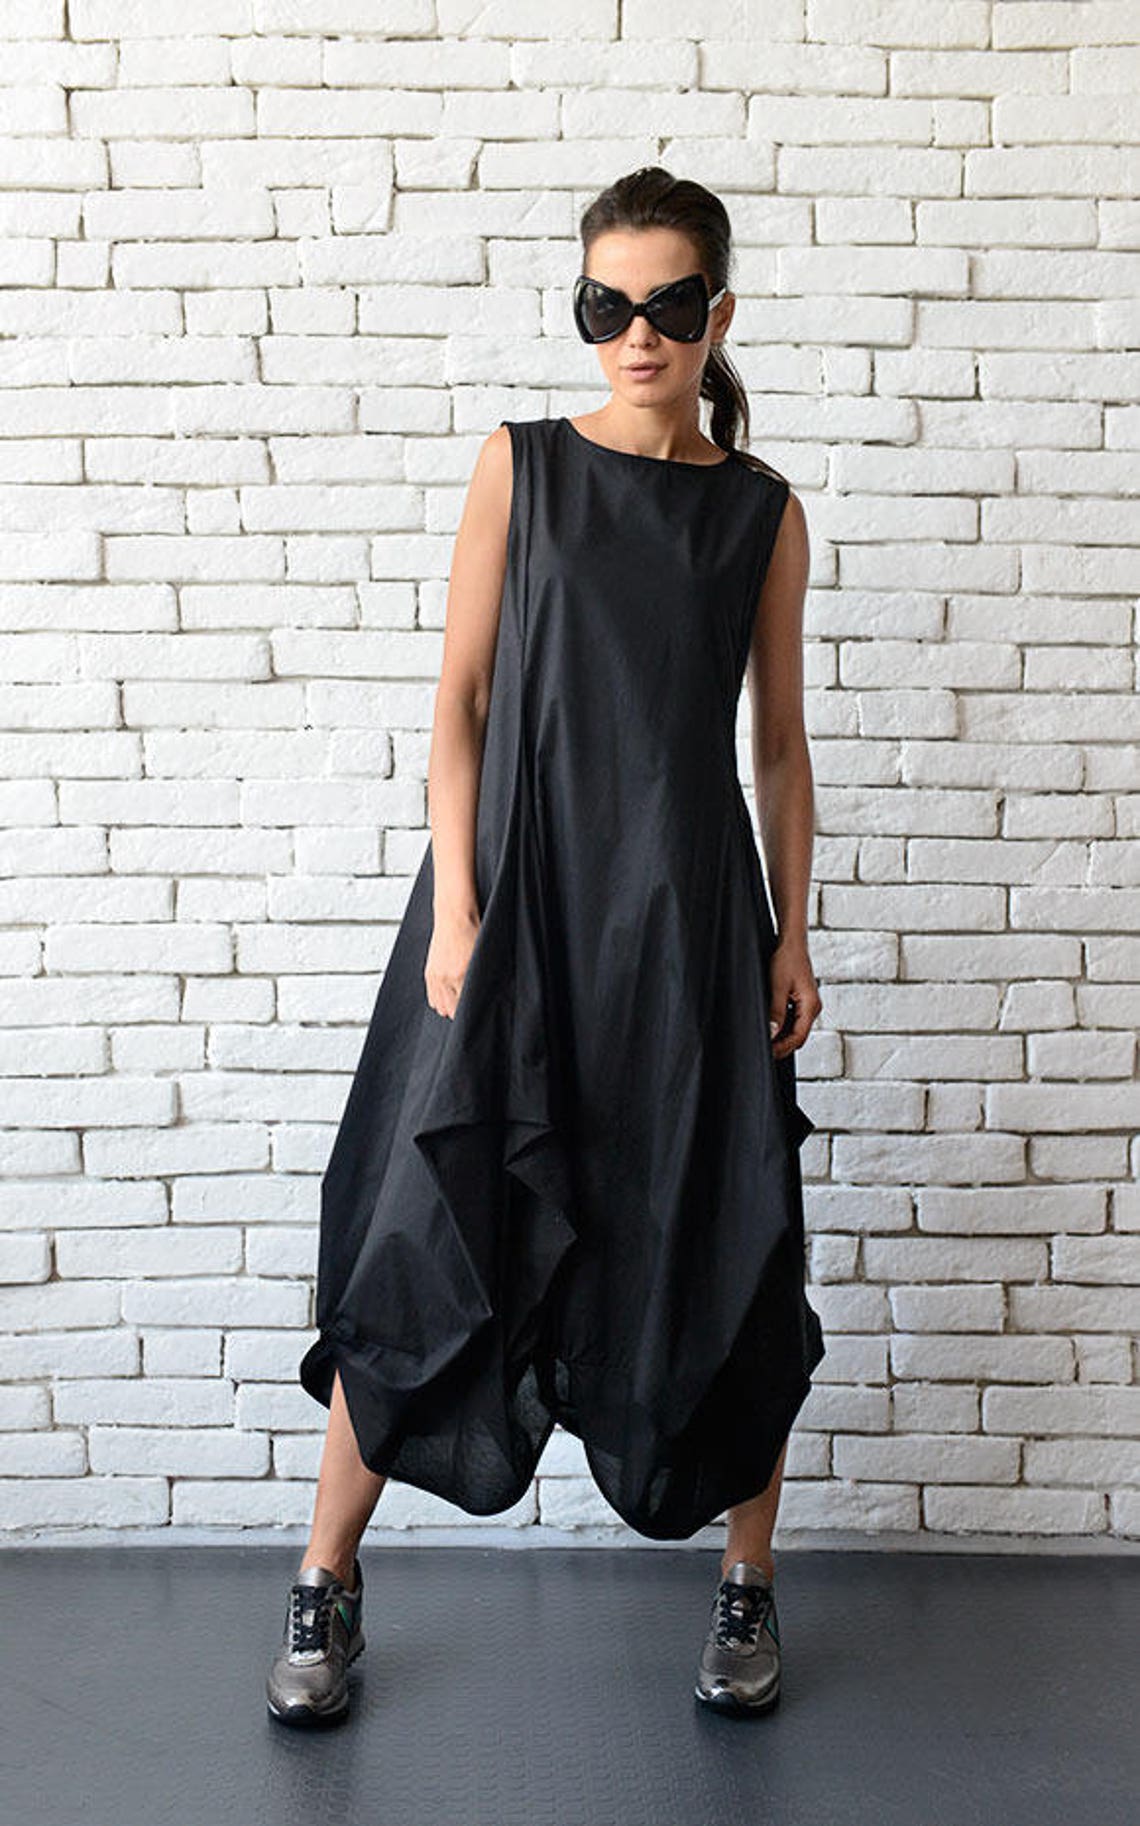 Black Maxi Dress/Extravagant Asymmetric Casual Dress/Oversize | Etsy